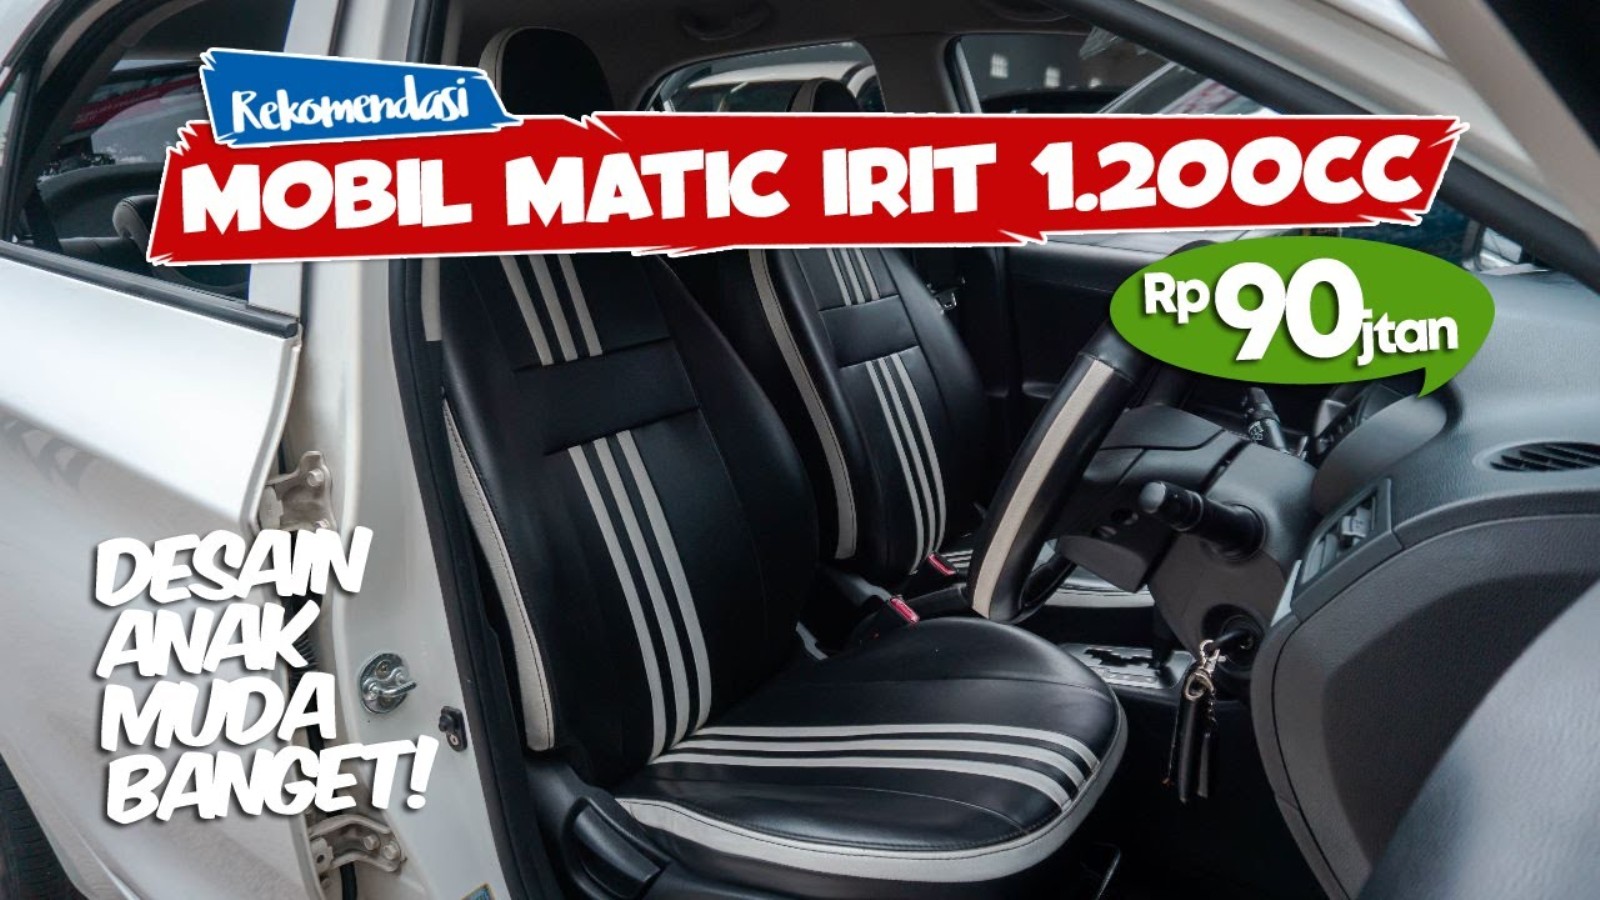 Mobil Irit, CC Kecil Dibawah 100 Jutaan, Lebih Murah dari Agya dan Ayla 1.2